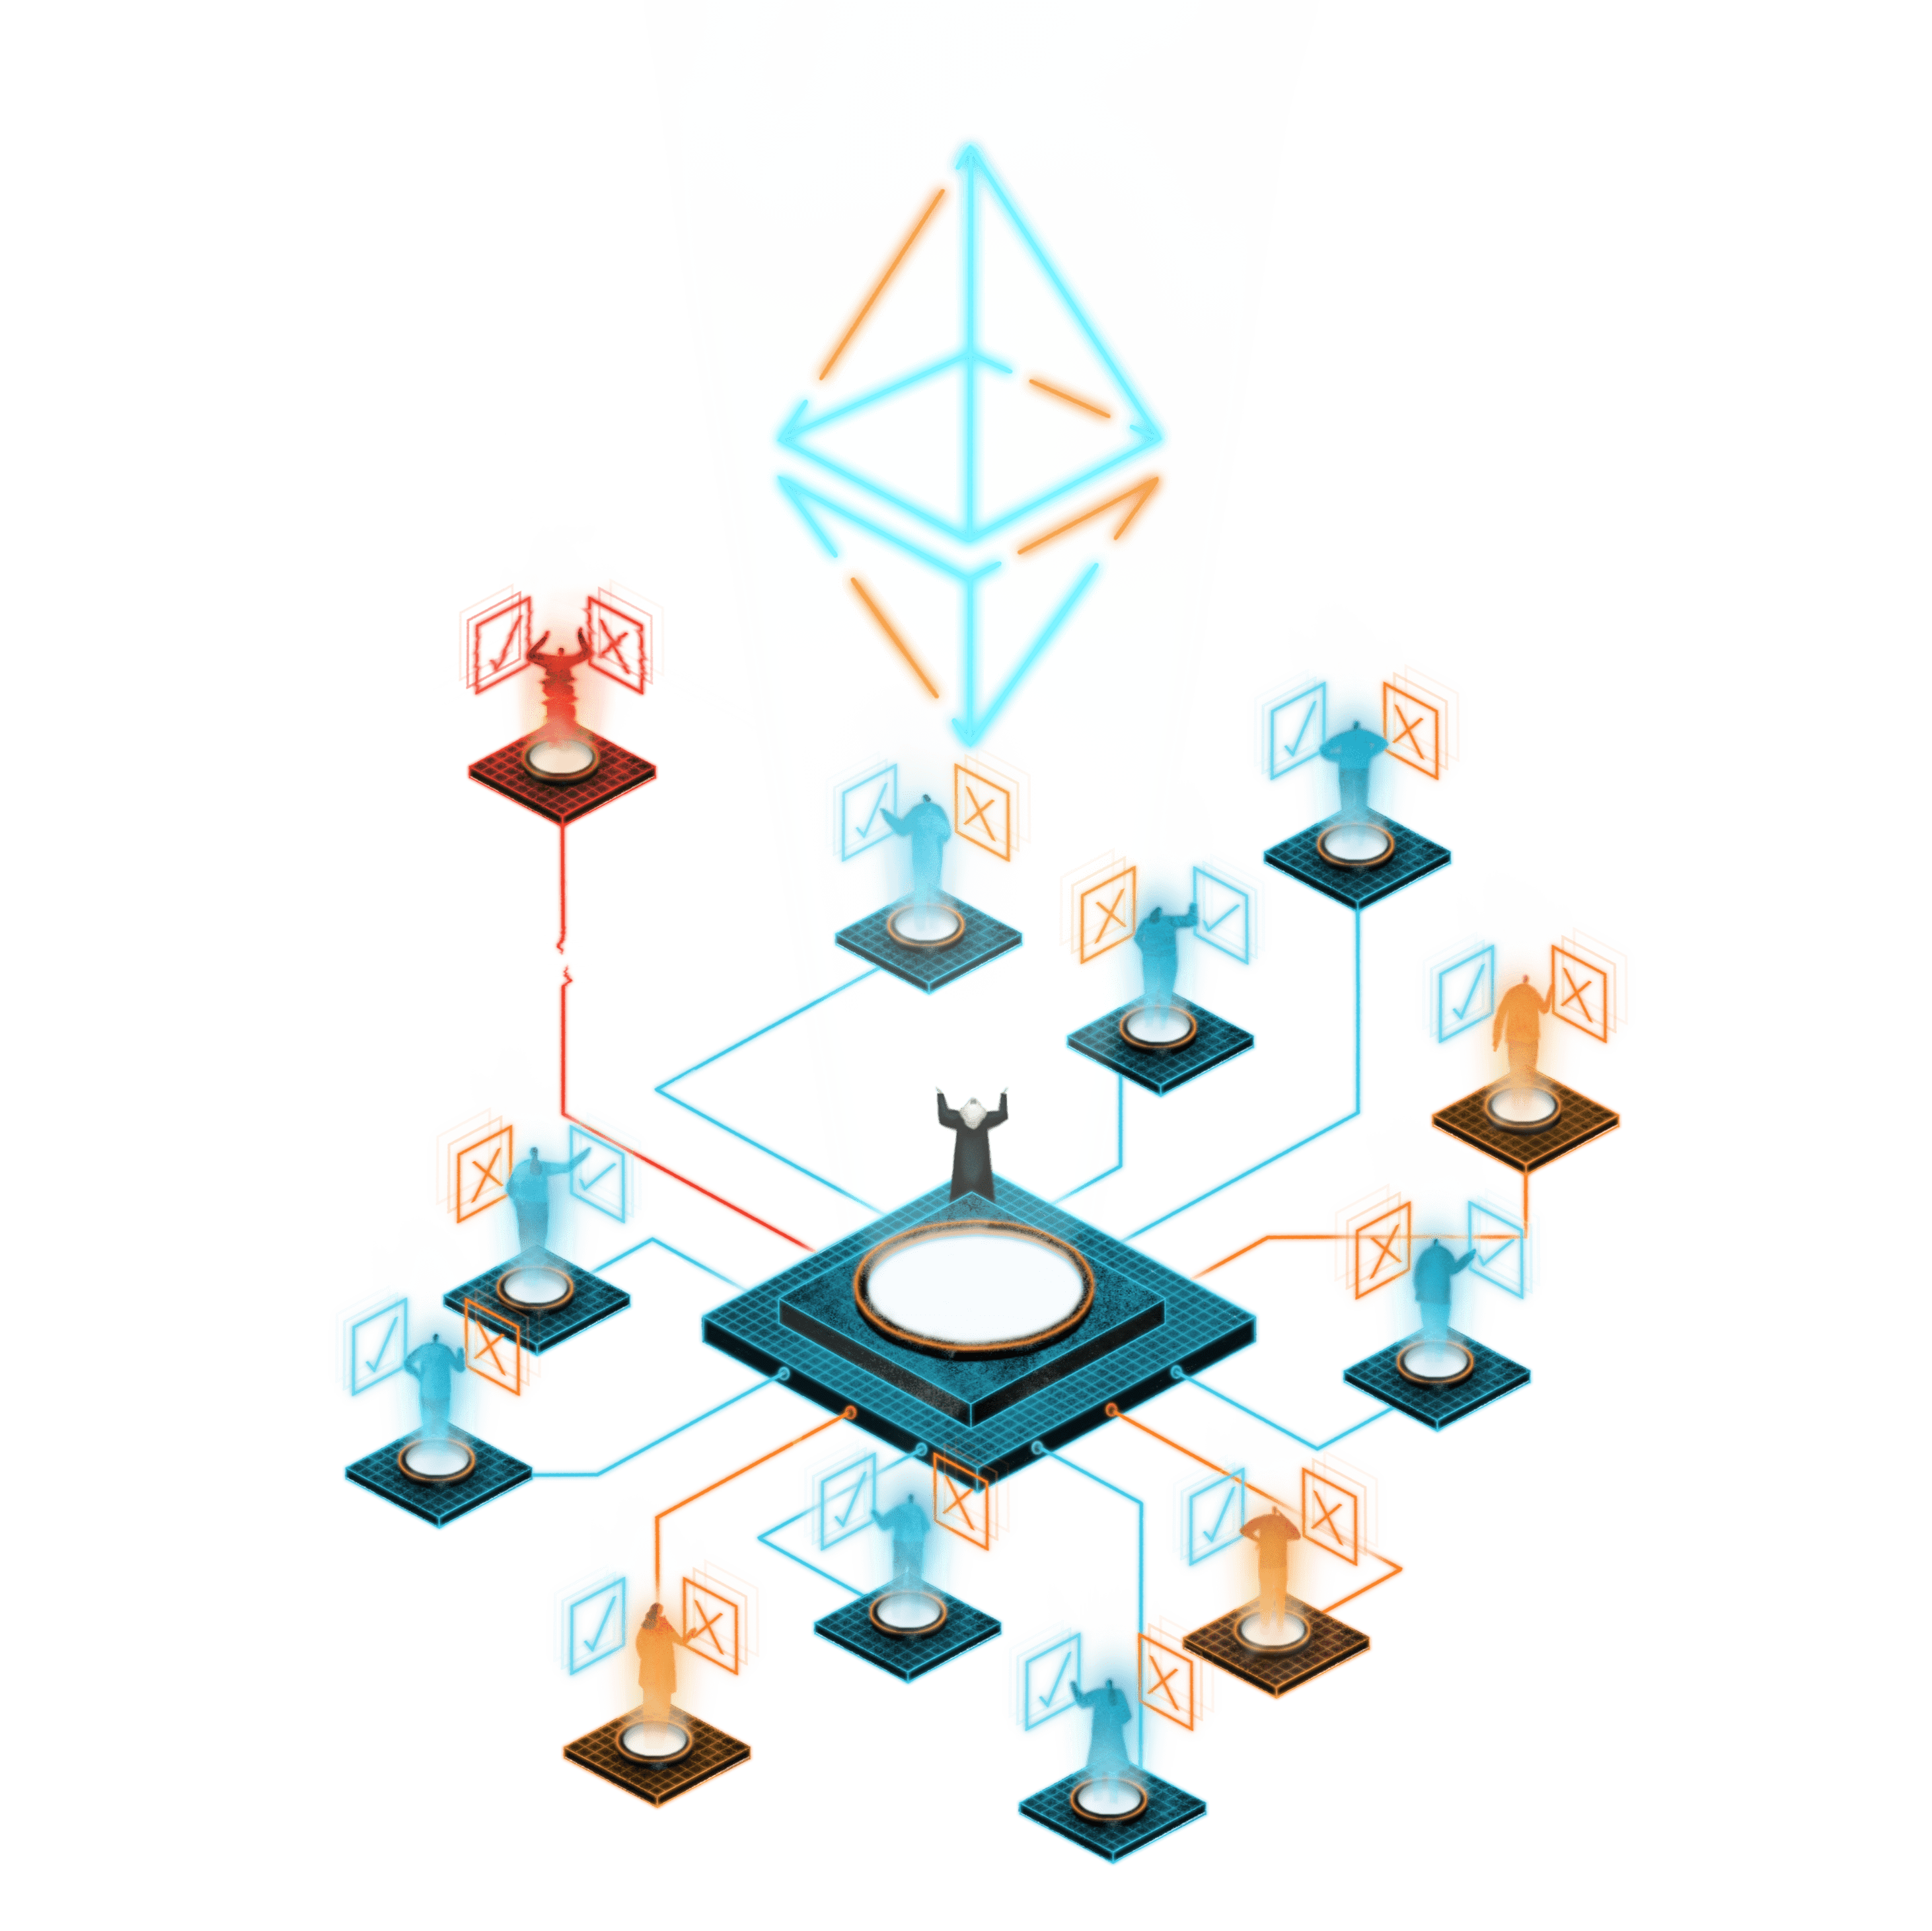 ethereum decentralized autonomous organization